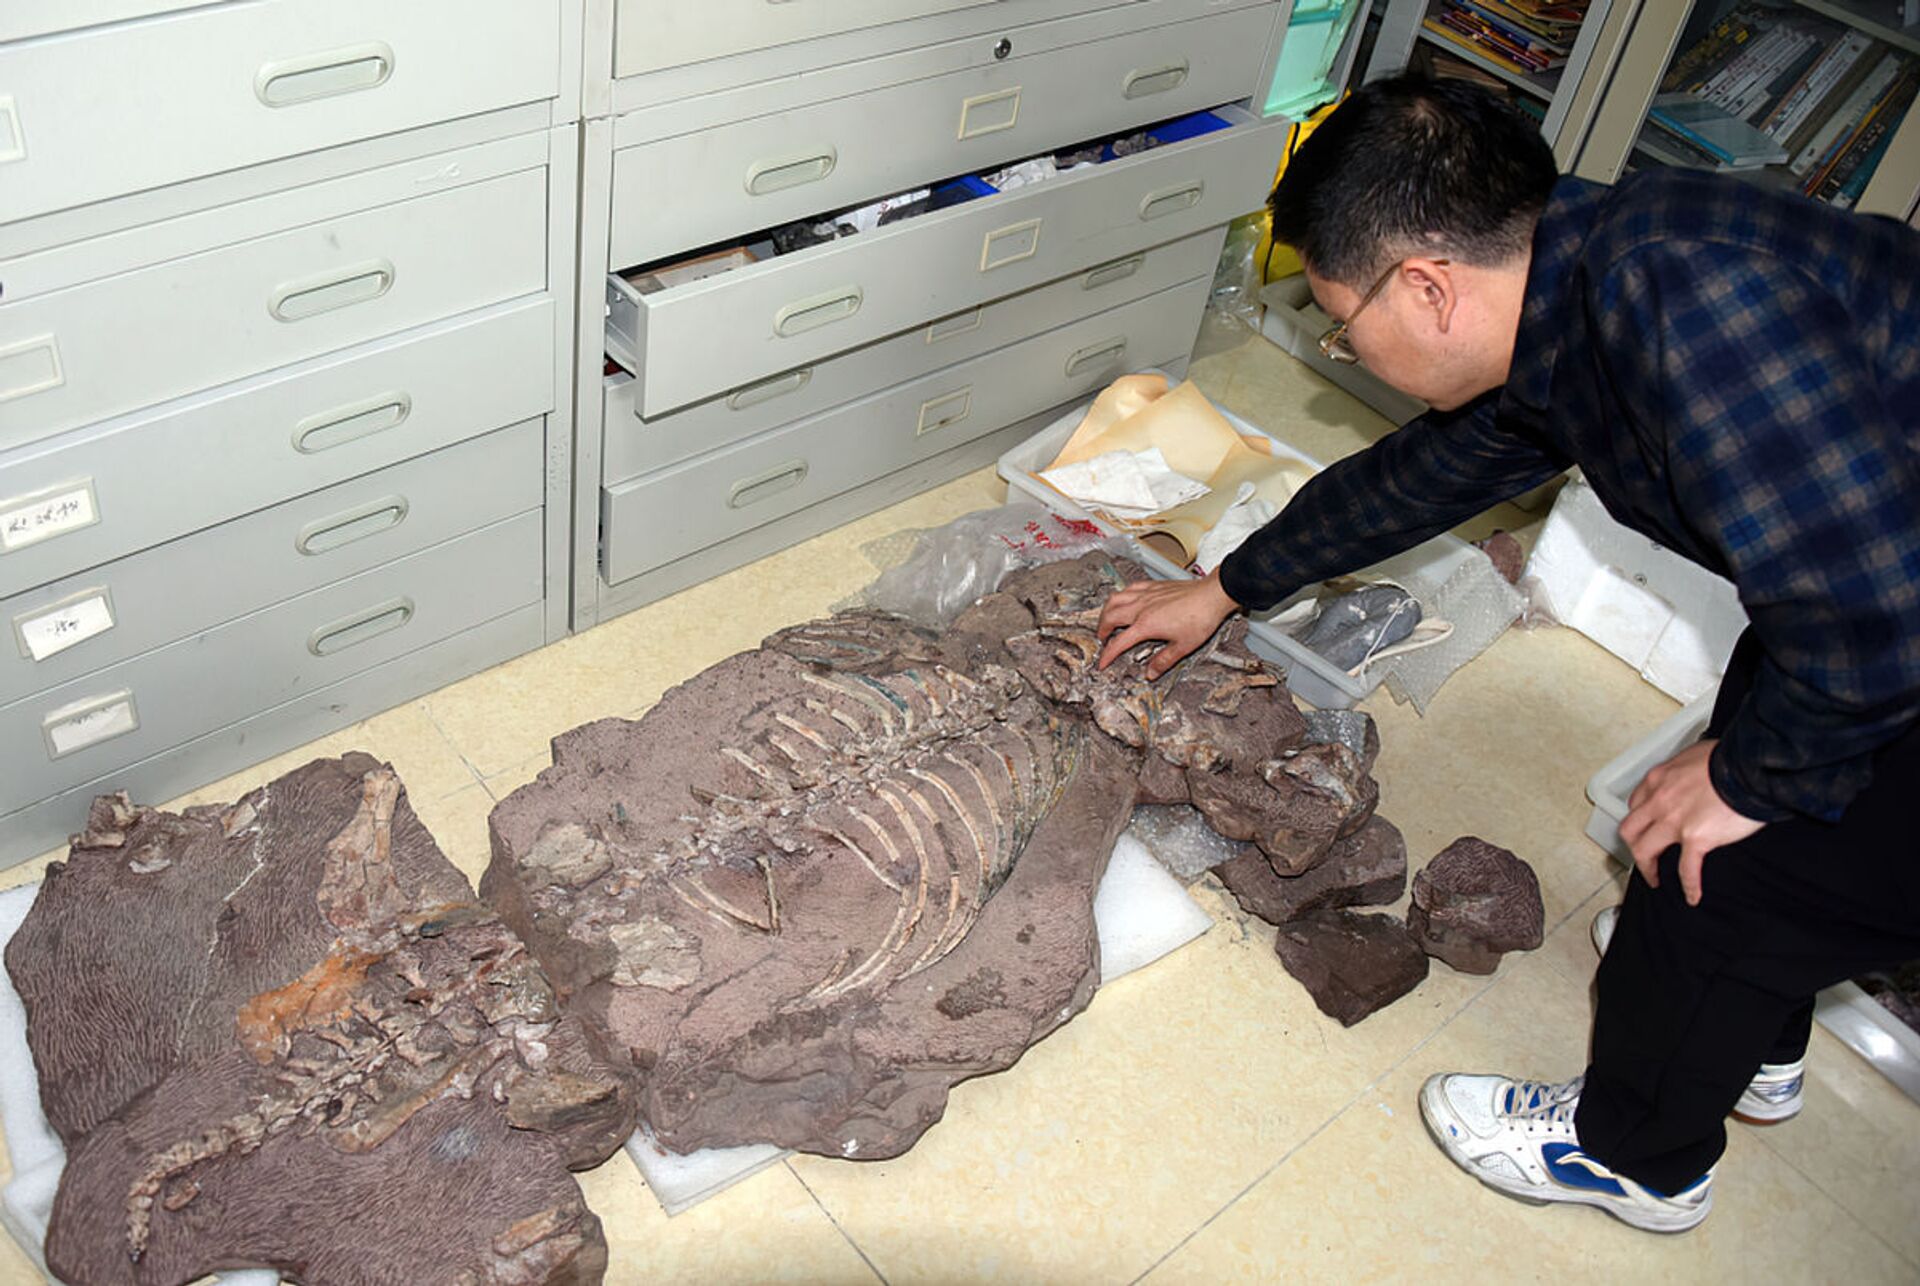 Descobrem na China nova espécie de réptil com 2 presas que viveu há 250 milhões de anos (FOTOS) - Sputnik Brasil, 1920, 27.02.2021